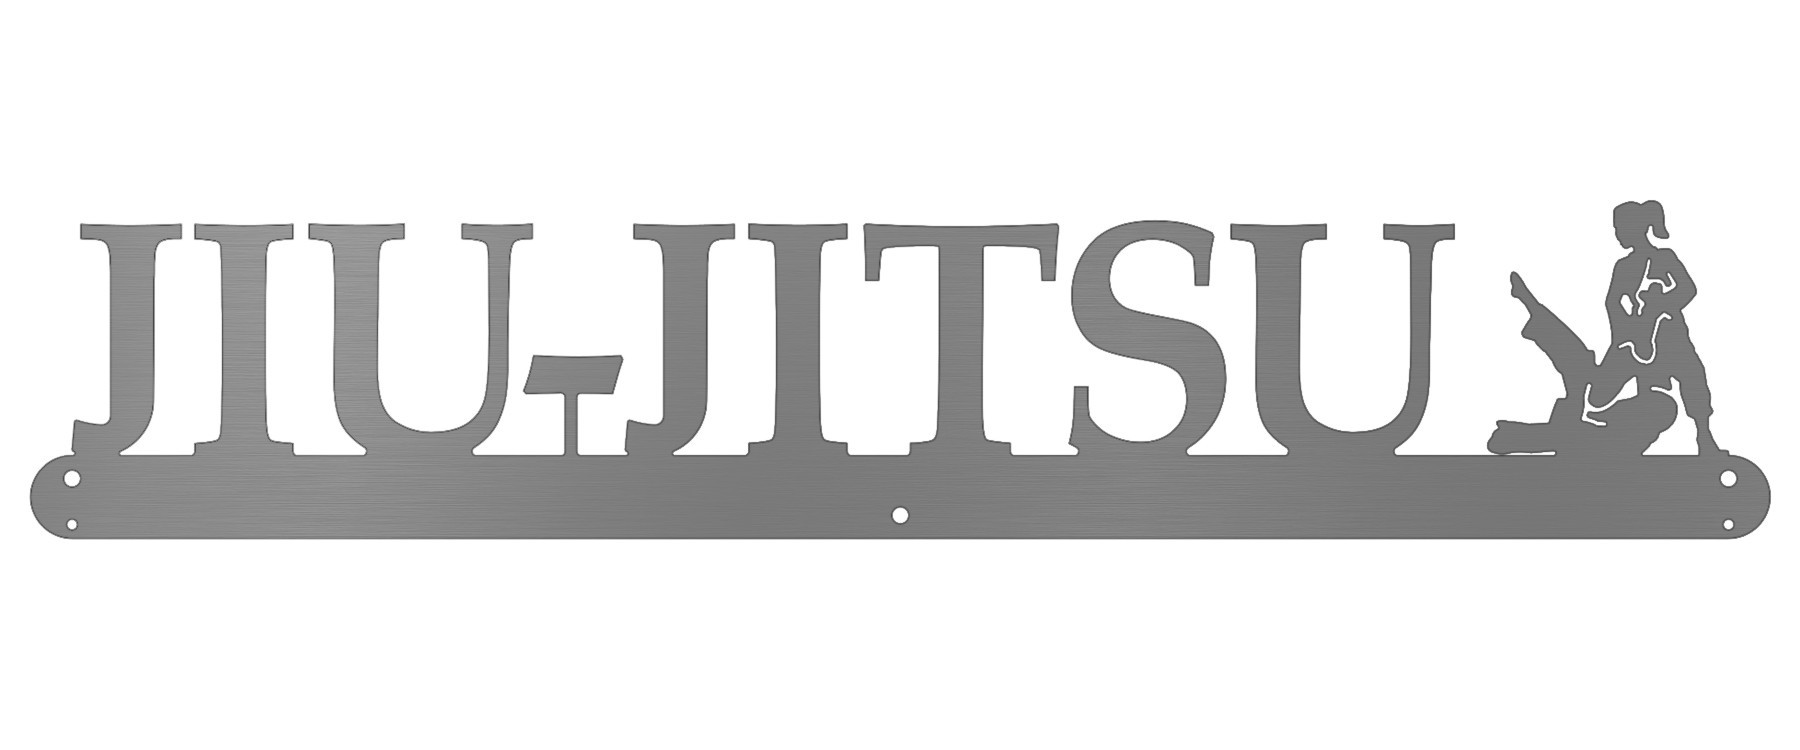 Jiu Jitsu Belt Display - Female